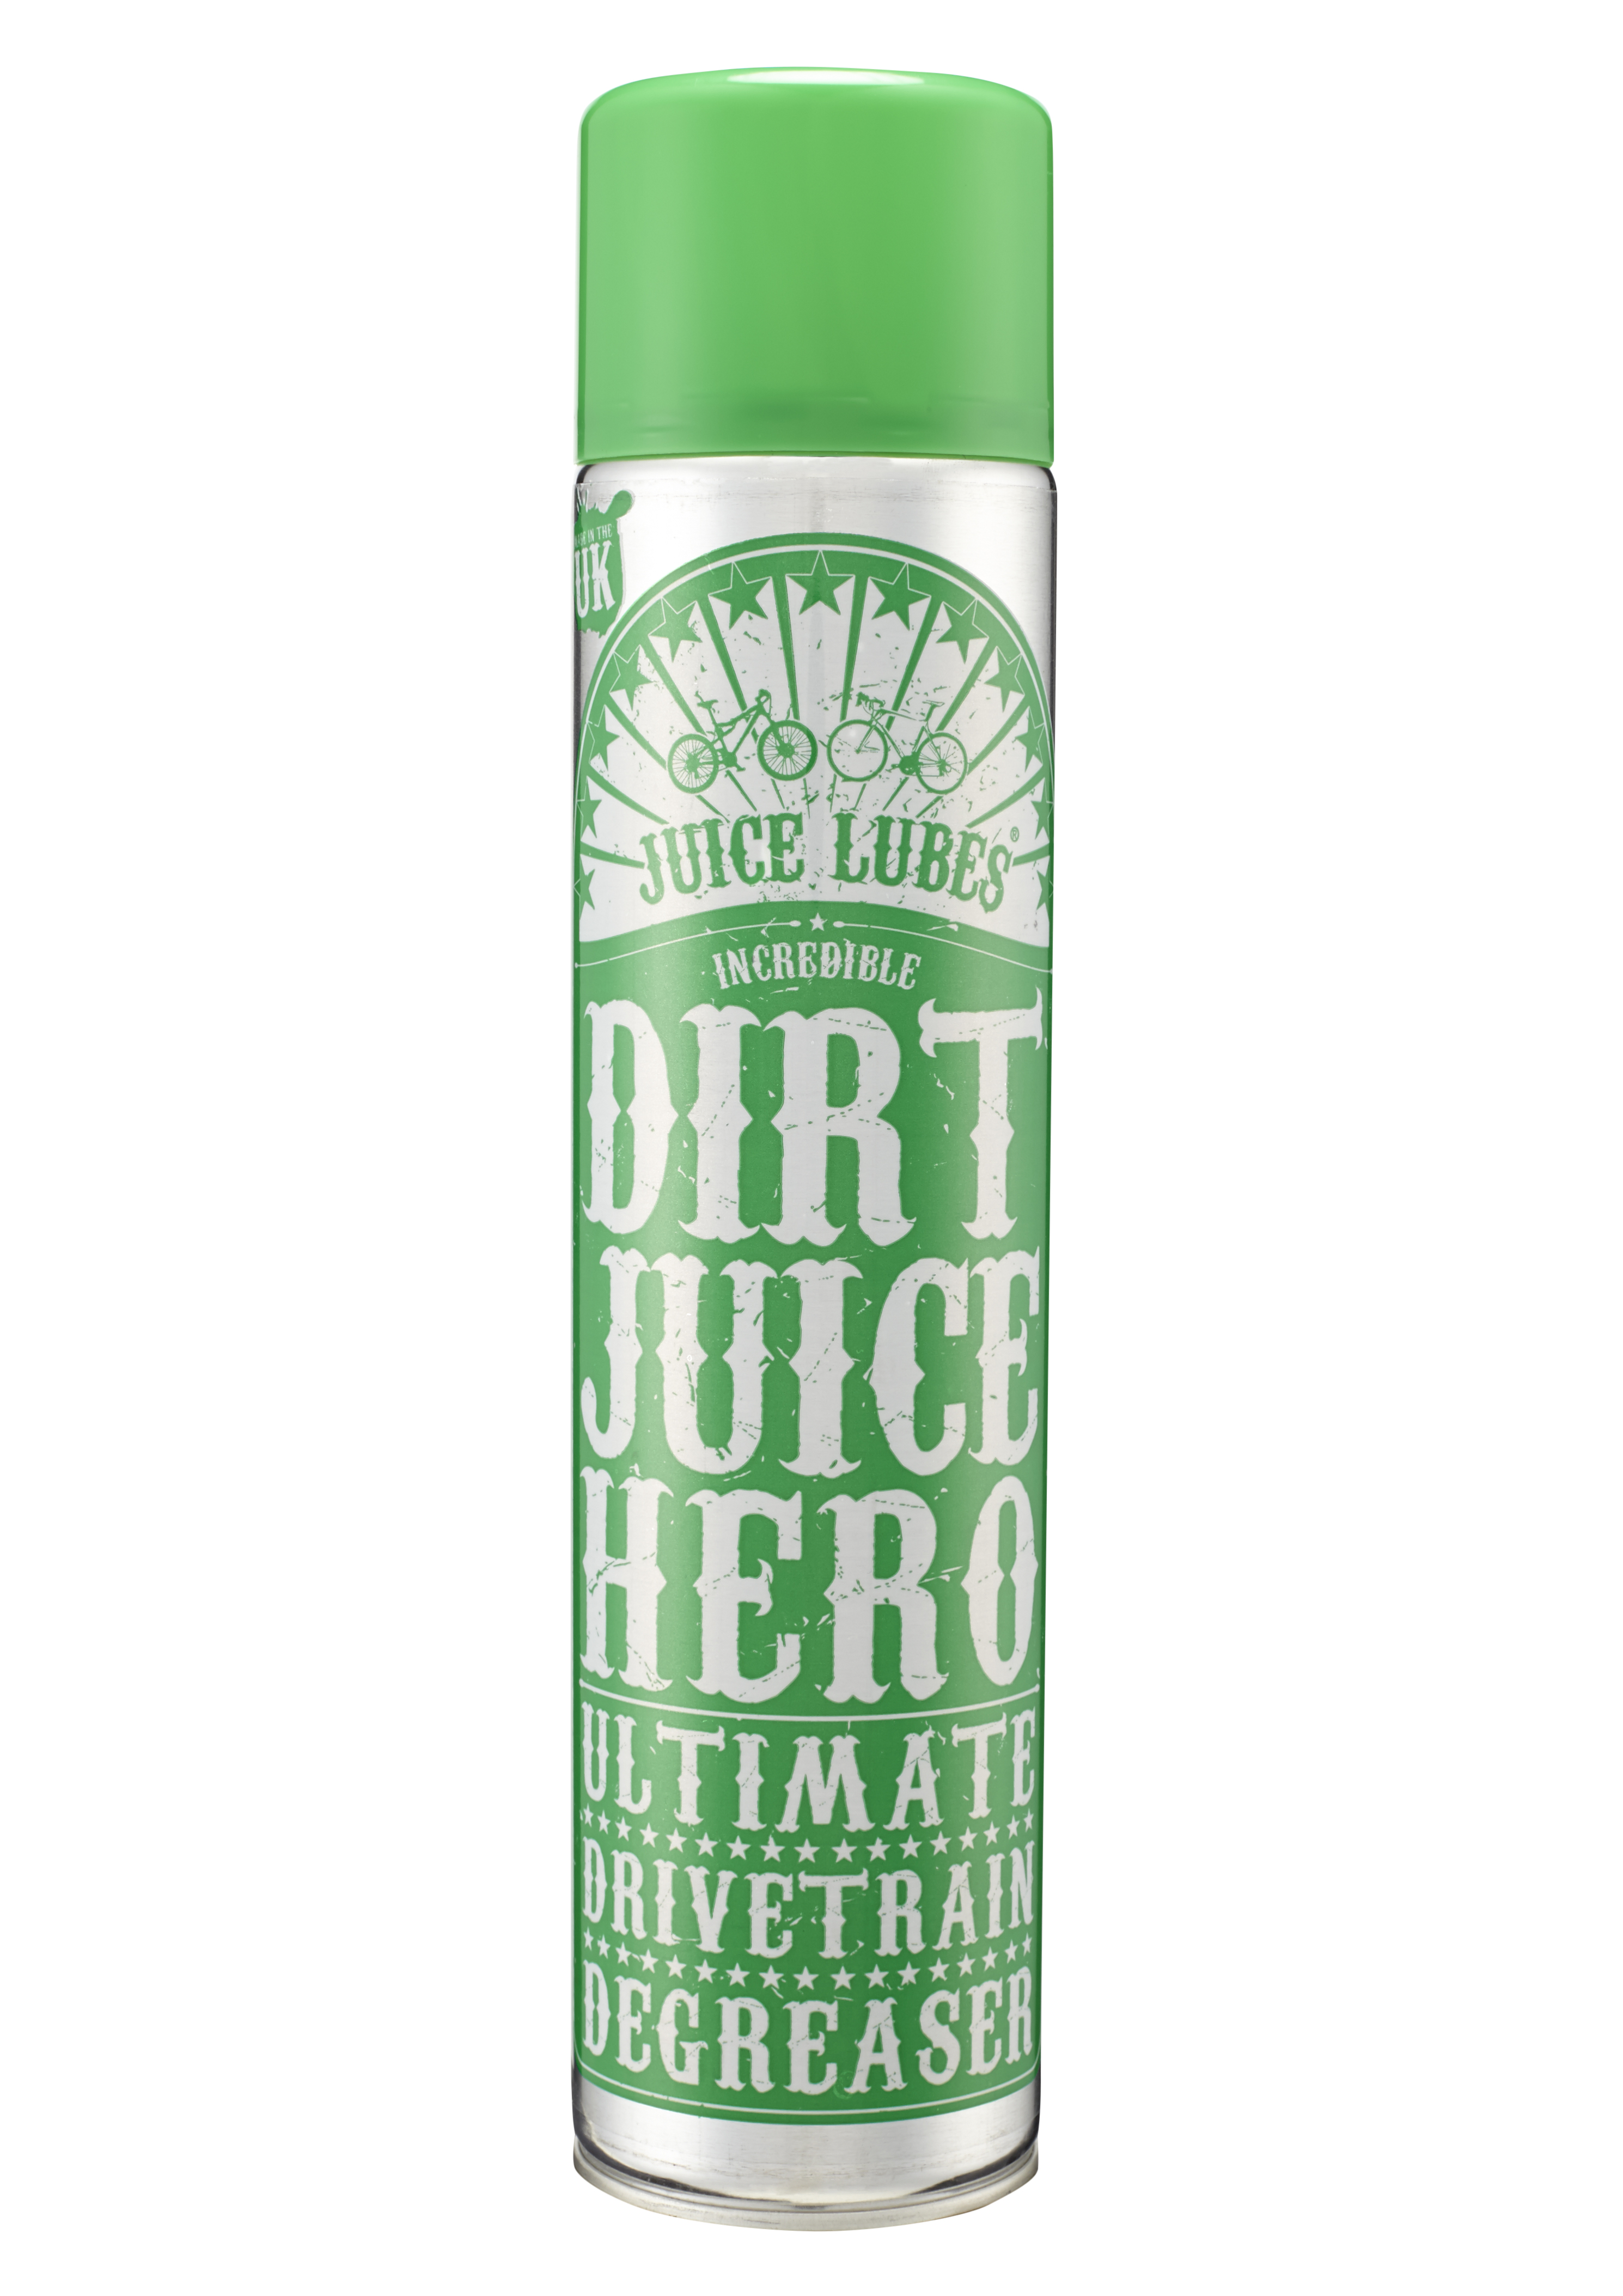 dirt-juice-hero-super-power-degreaser-600ml-djh1